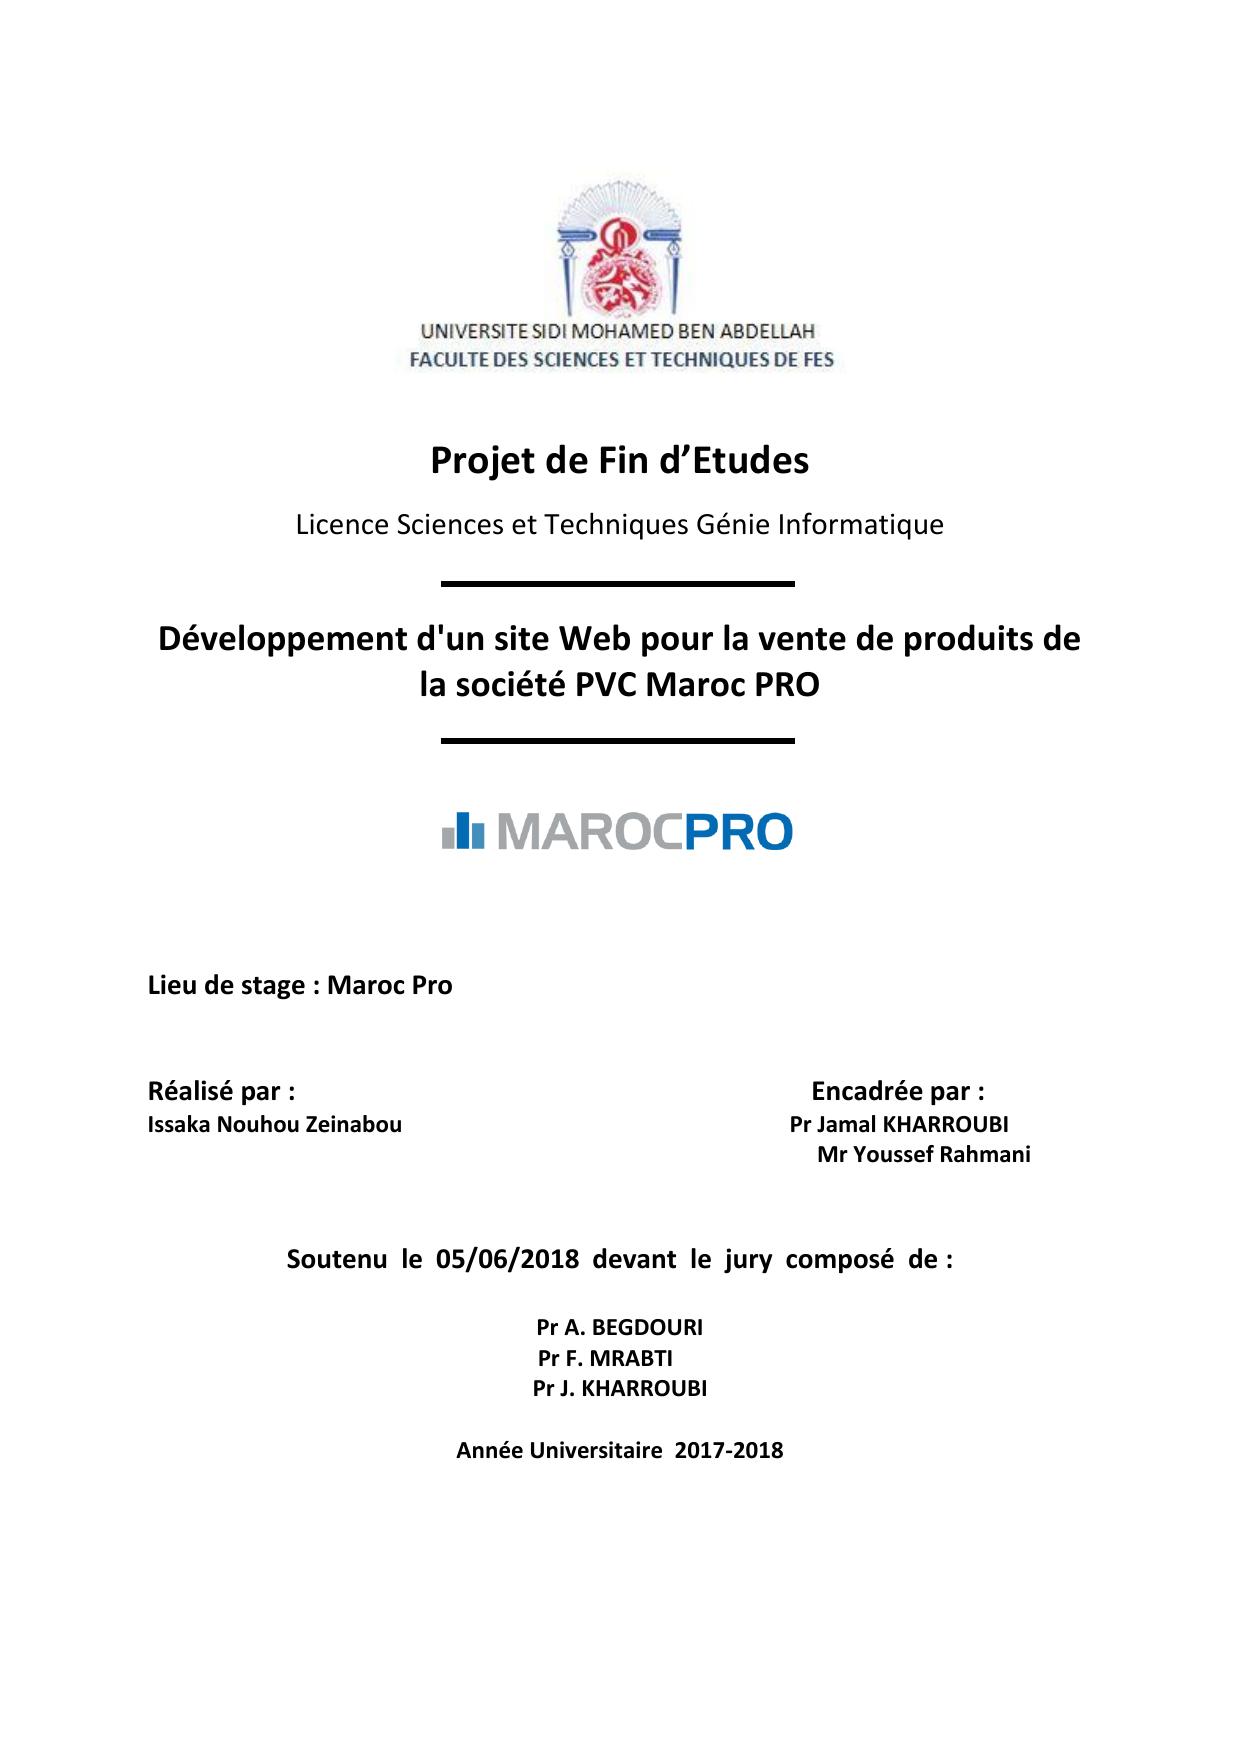 Développement d'un site Web pour la vente de produits de la société PVC Maroc PRO